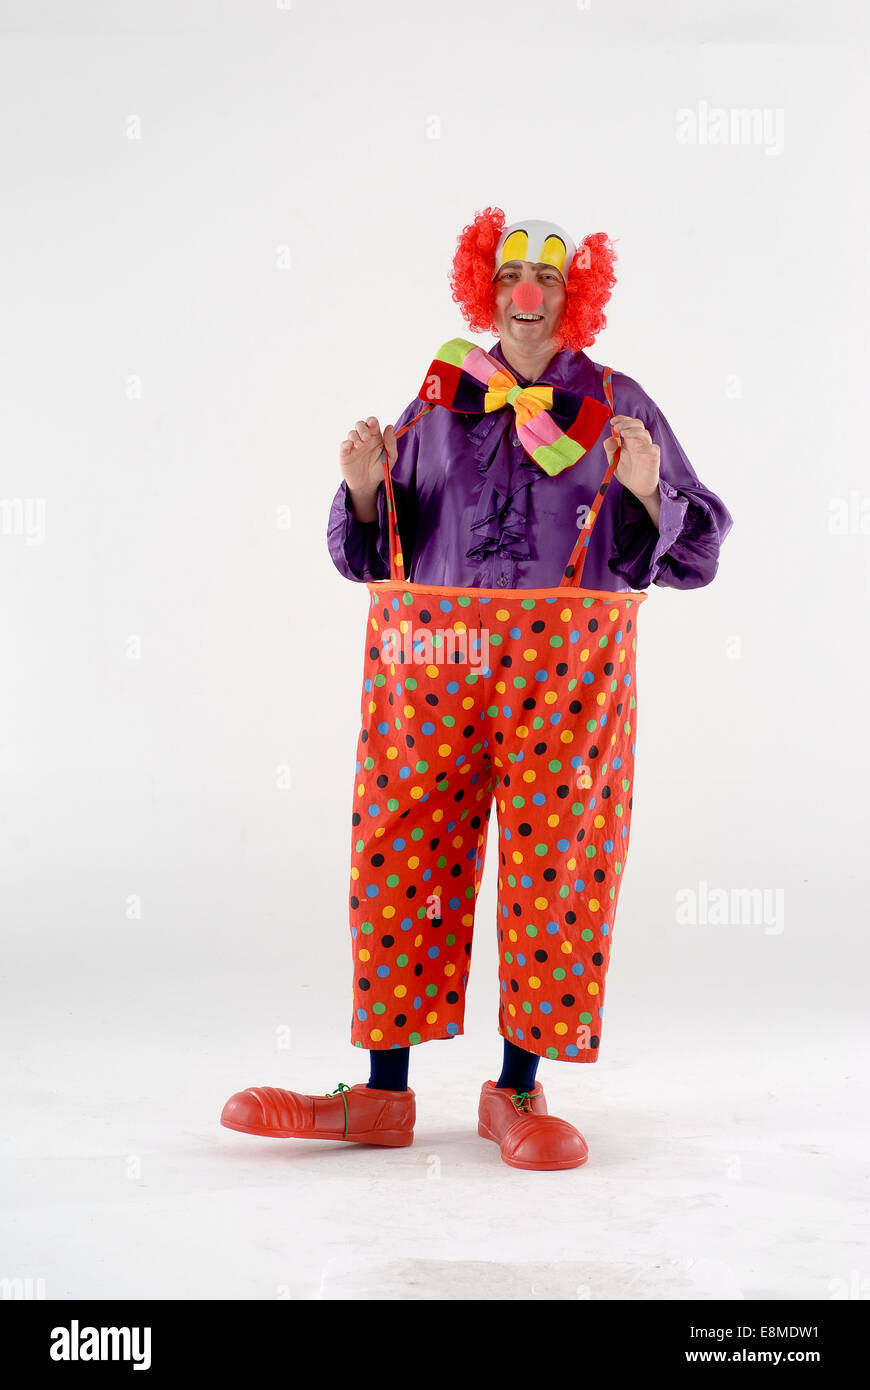 Circus outfit immagini e fotografie stock ad alta risoluzione - Alamy